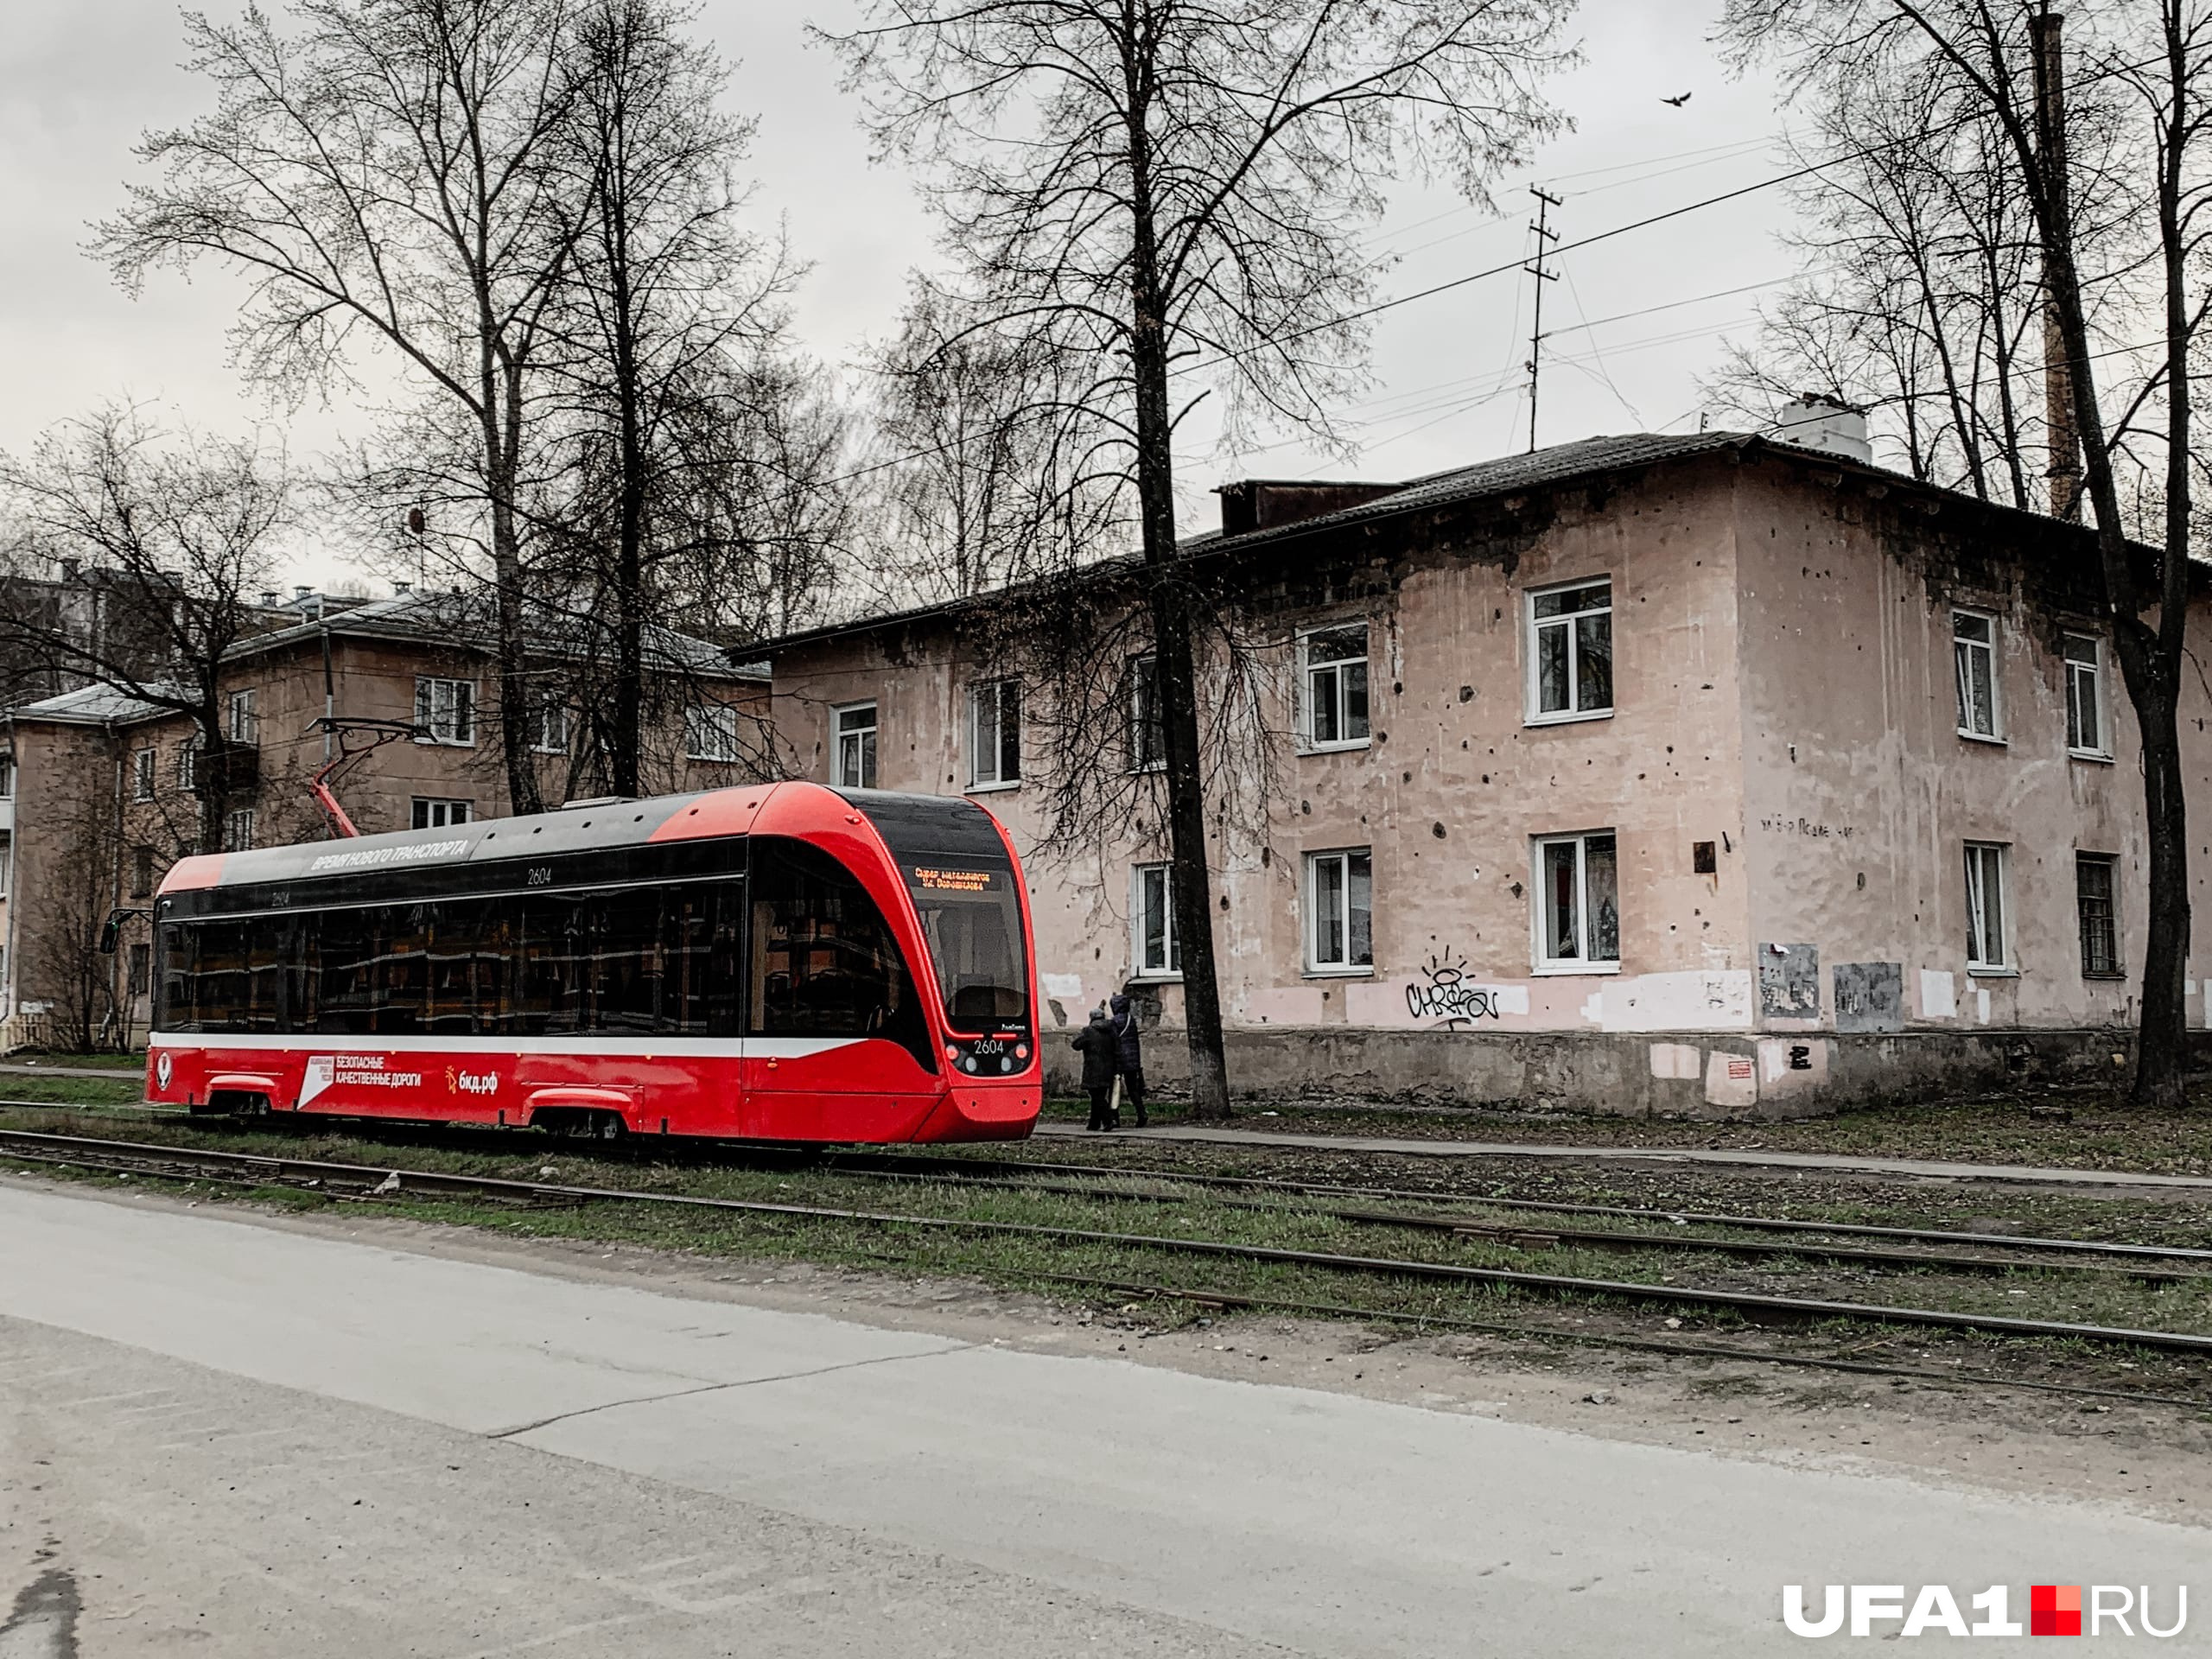 Новый вагон едет по улицам окраинного района Ижевска